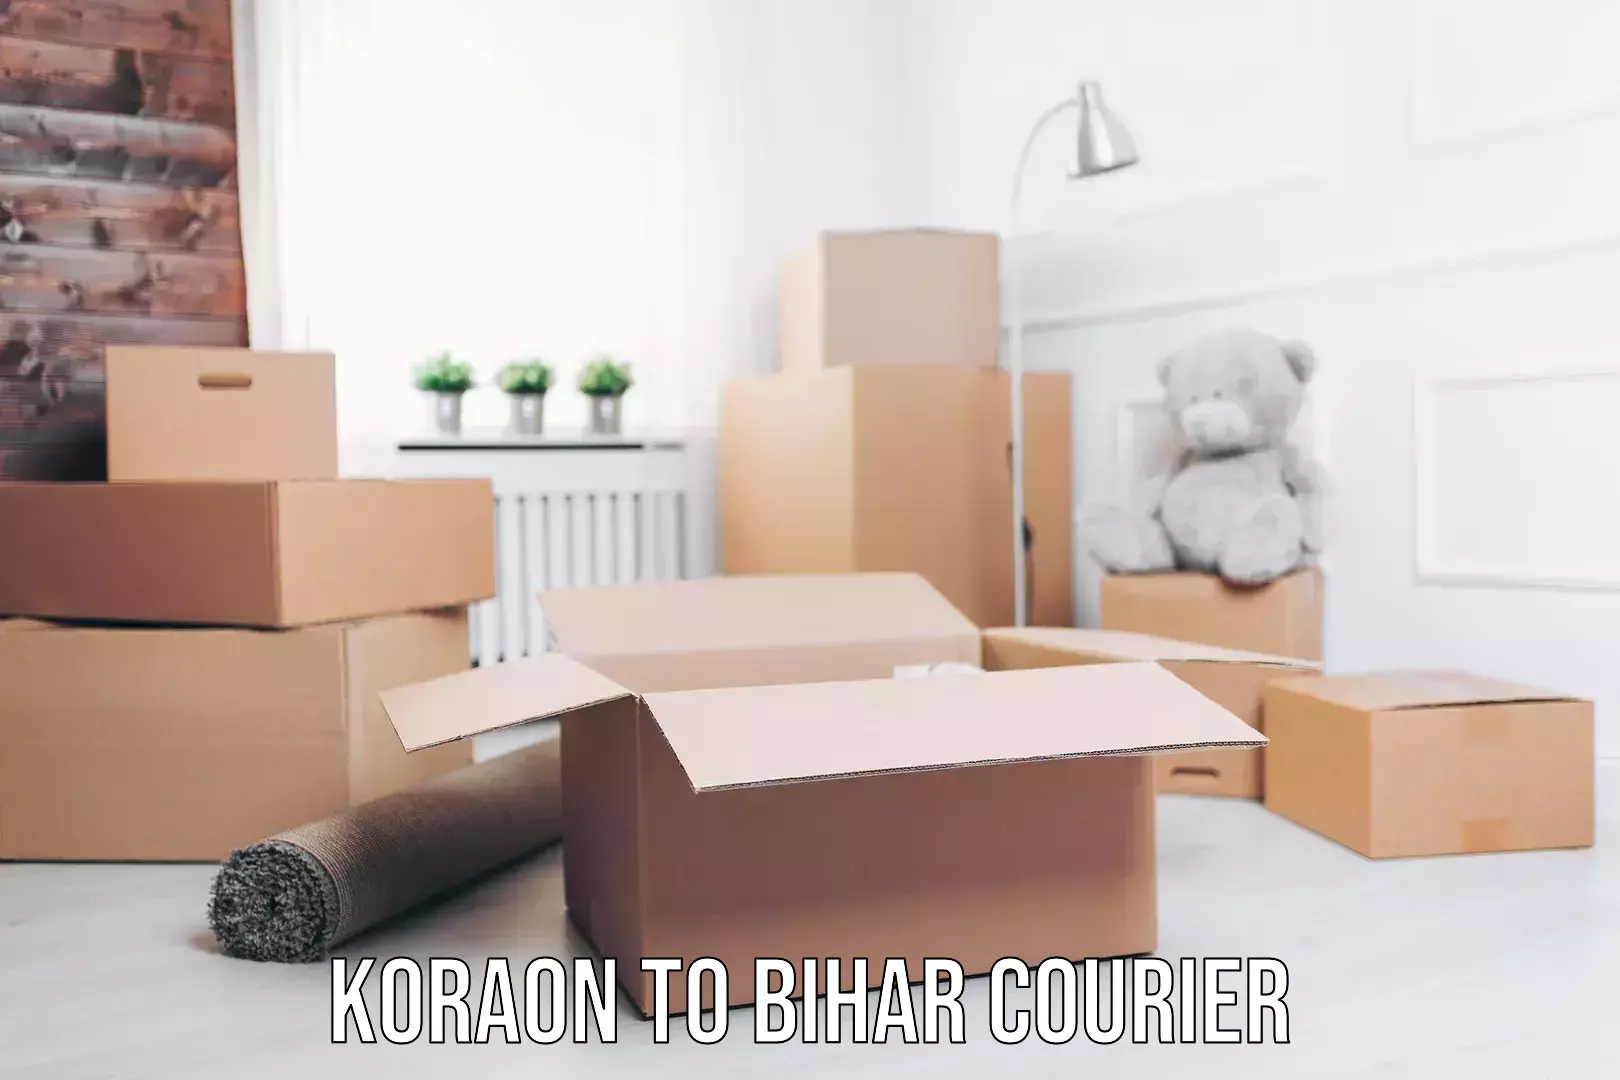 Skilled furniture transport in Koraon to Bihar